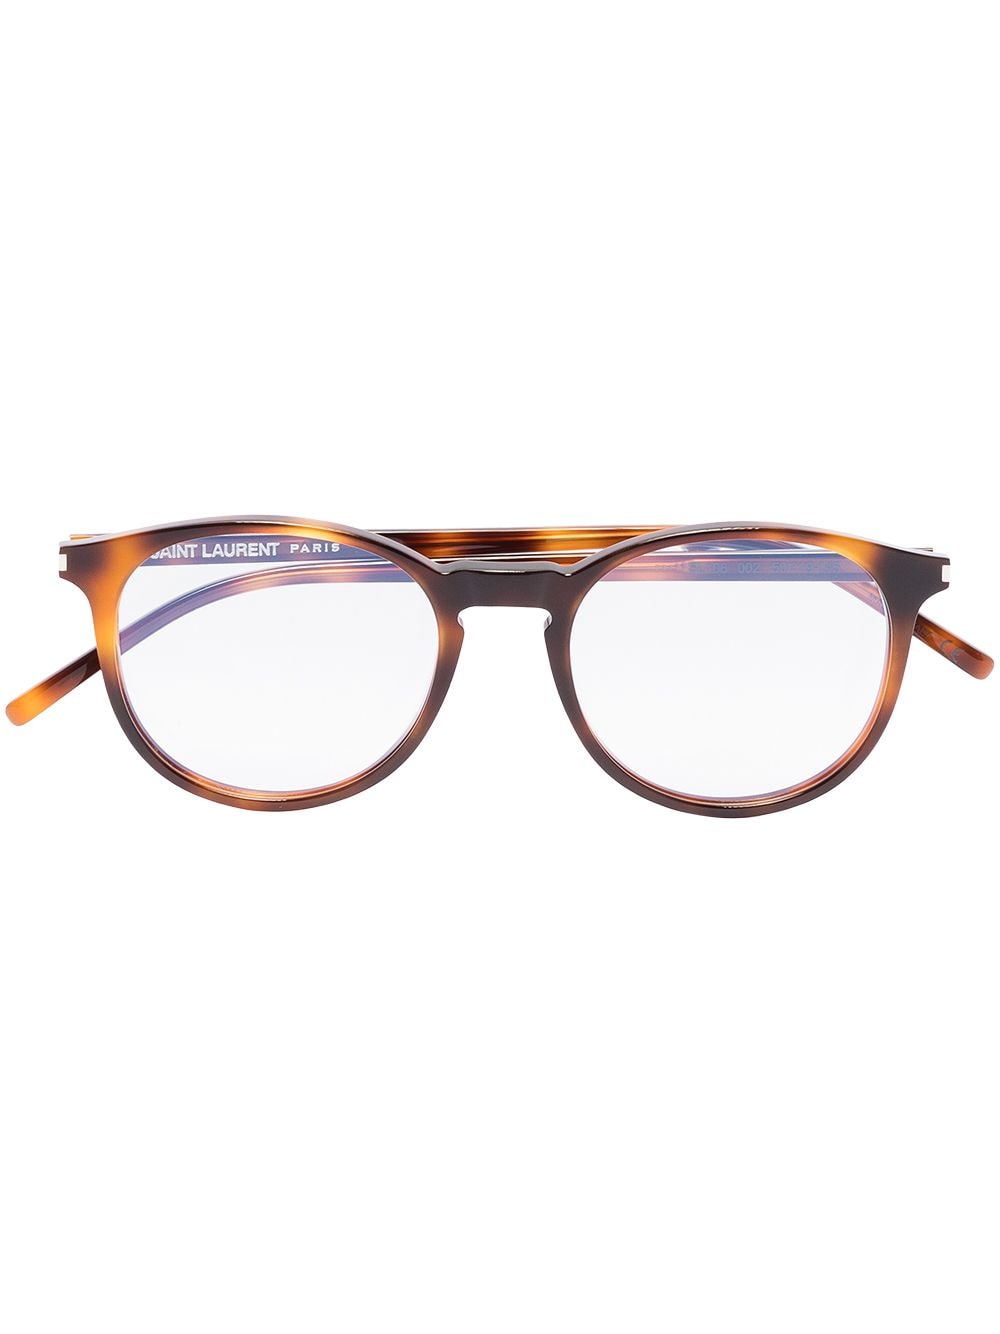 фото Saint laurent eyewear очки в круглой оправе черепаховой расцветки